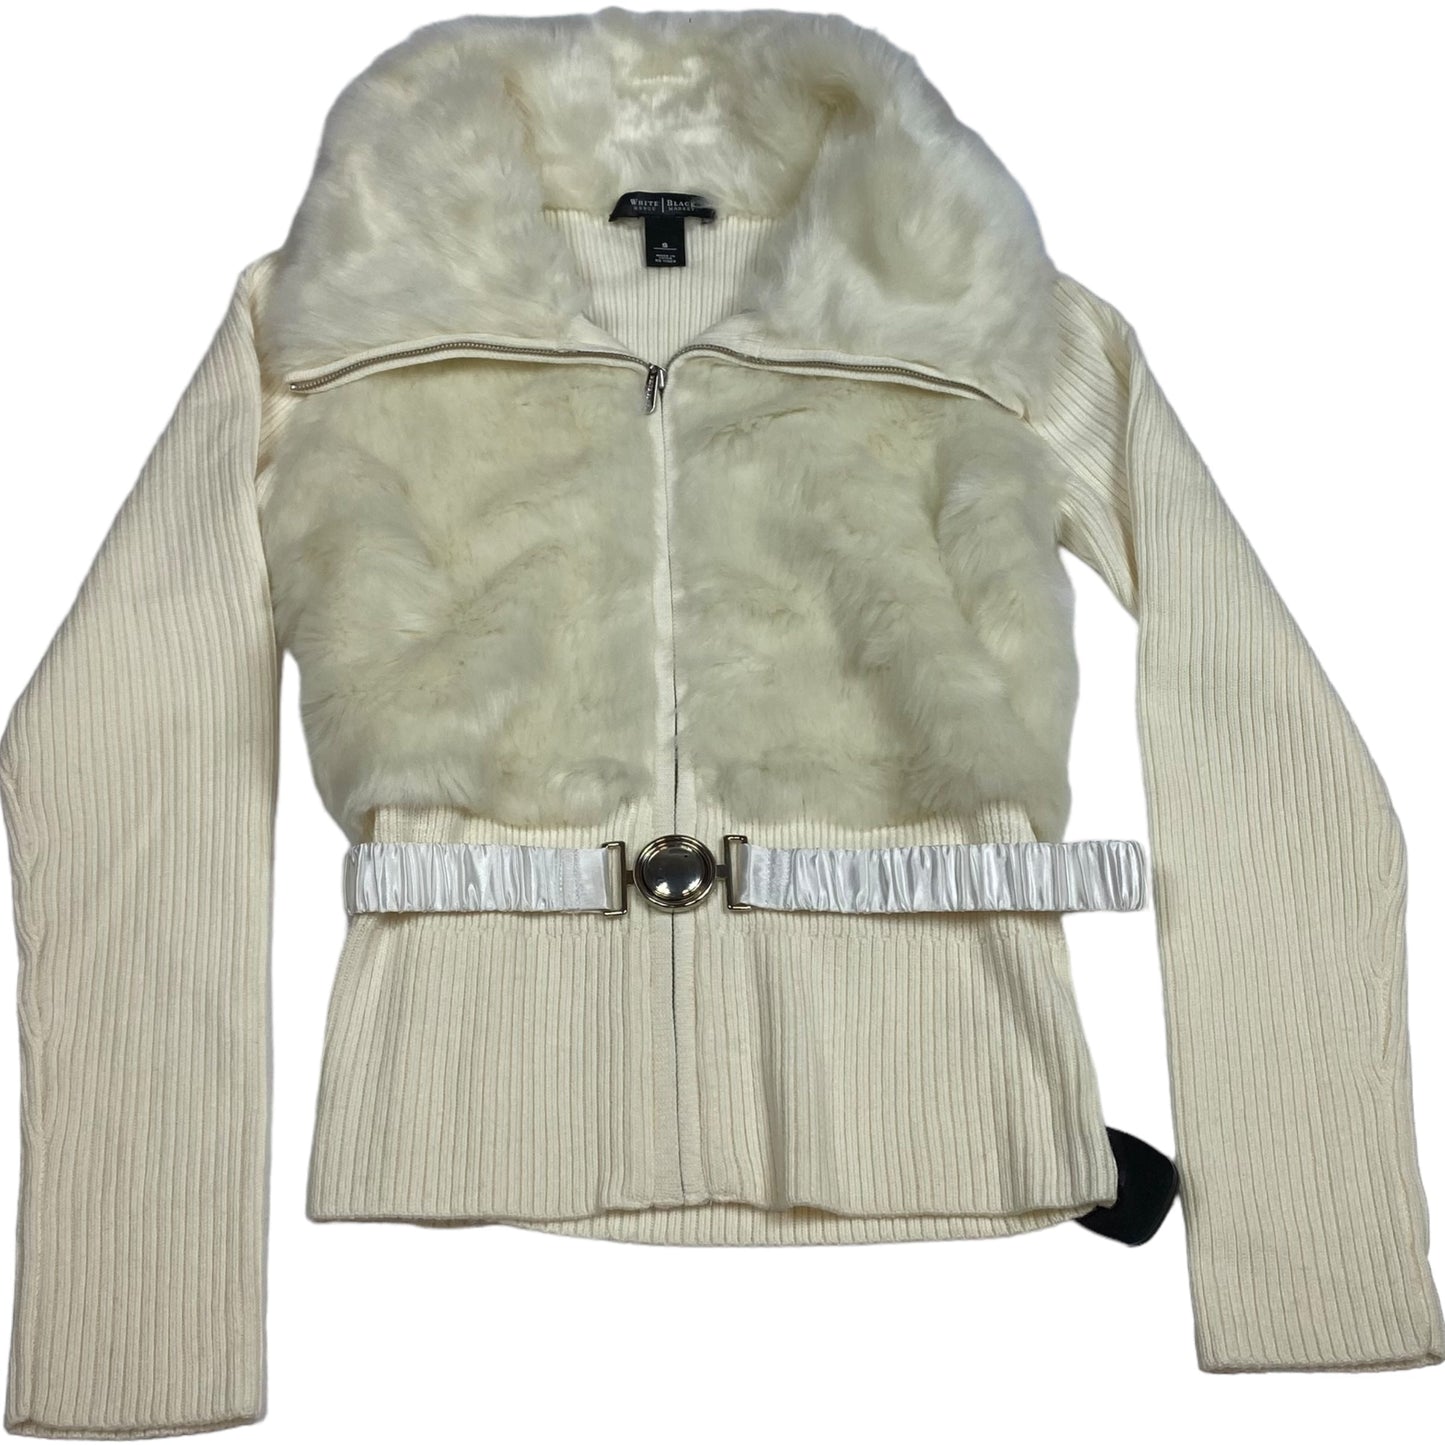 Jacket Faux Fur & Sherpa By White House Black Market   Size: S